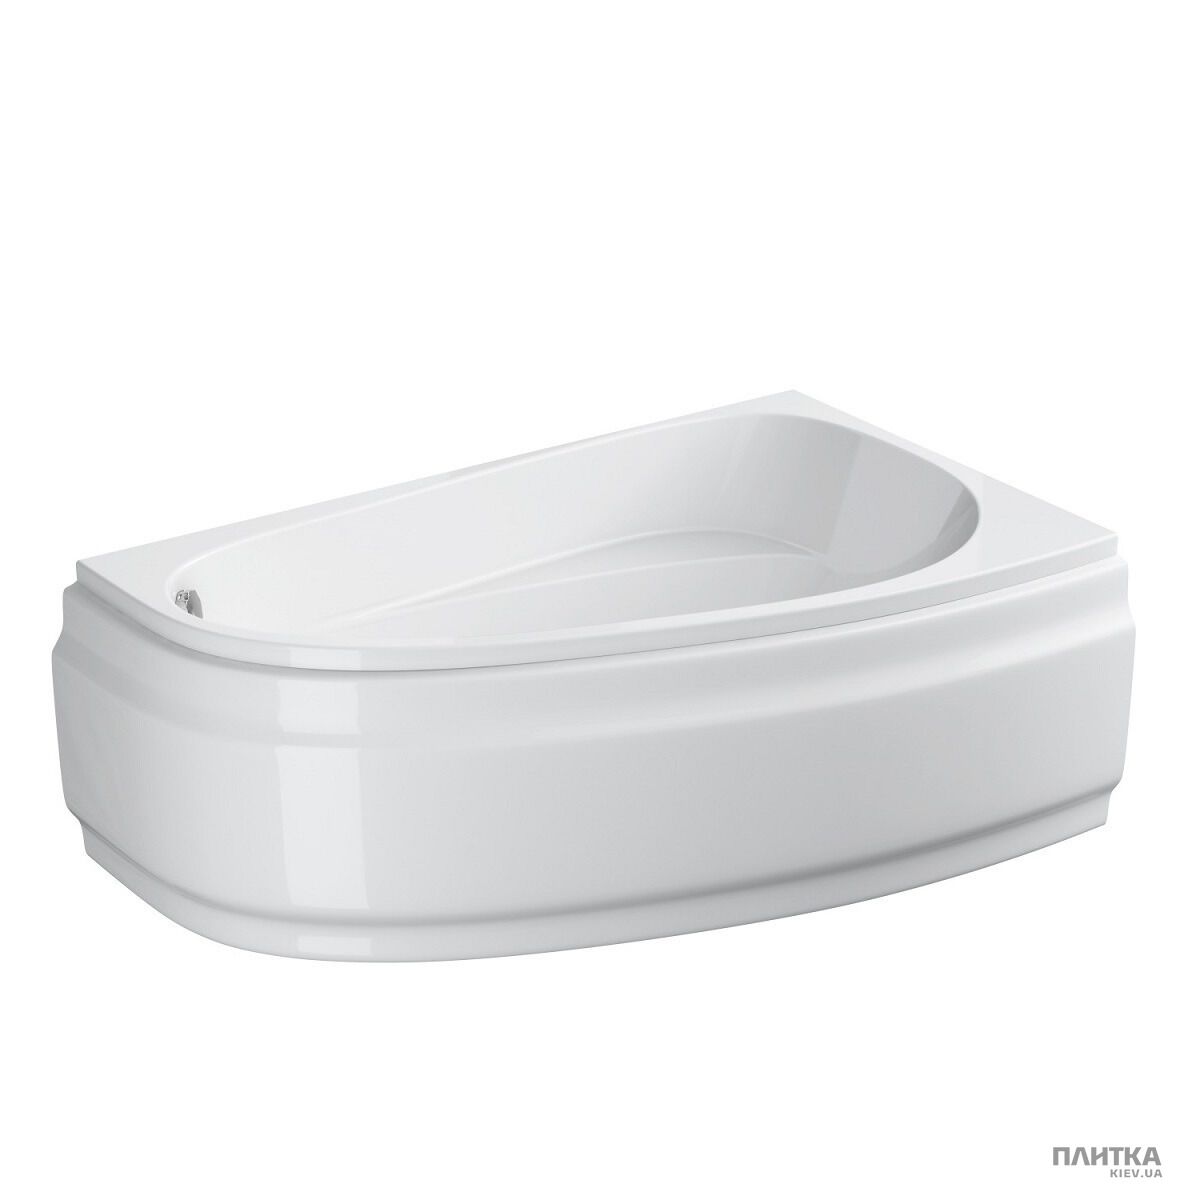 Акрилова ванна Cersanit Joanna New 160x95 см права, асиметрична білий